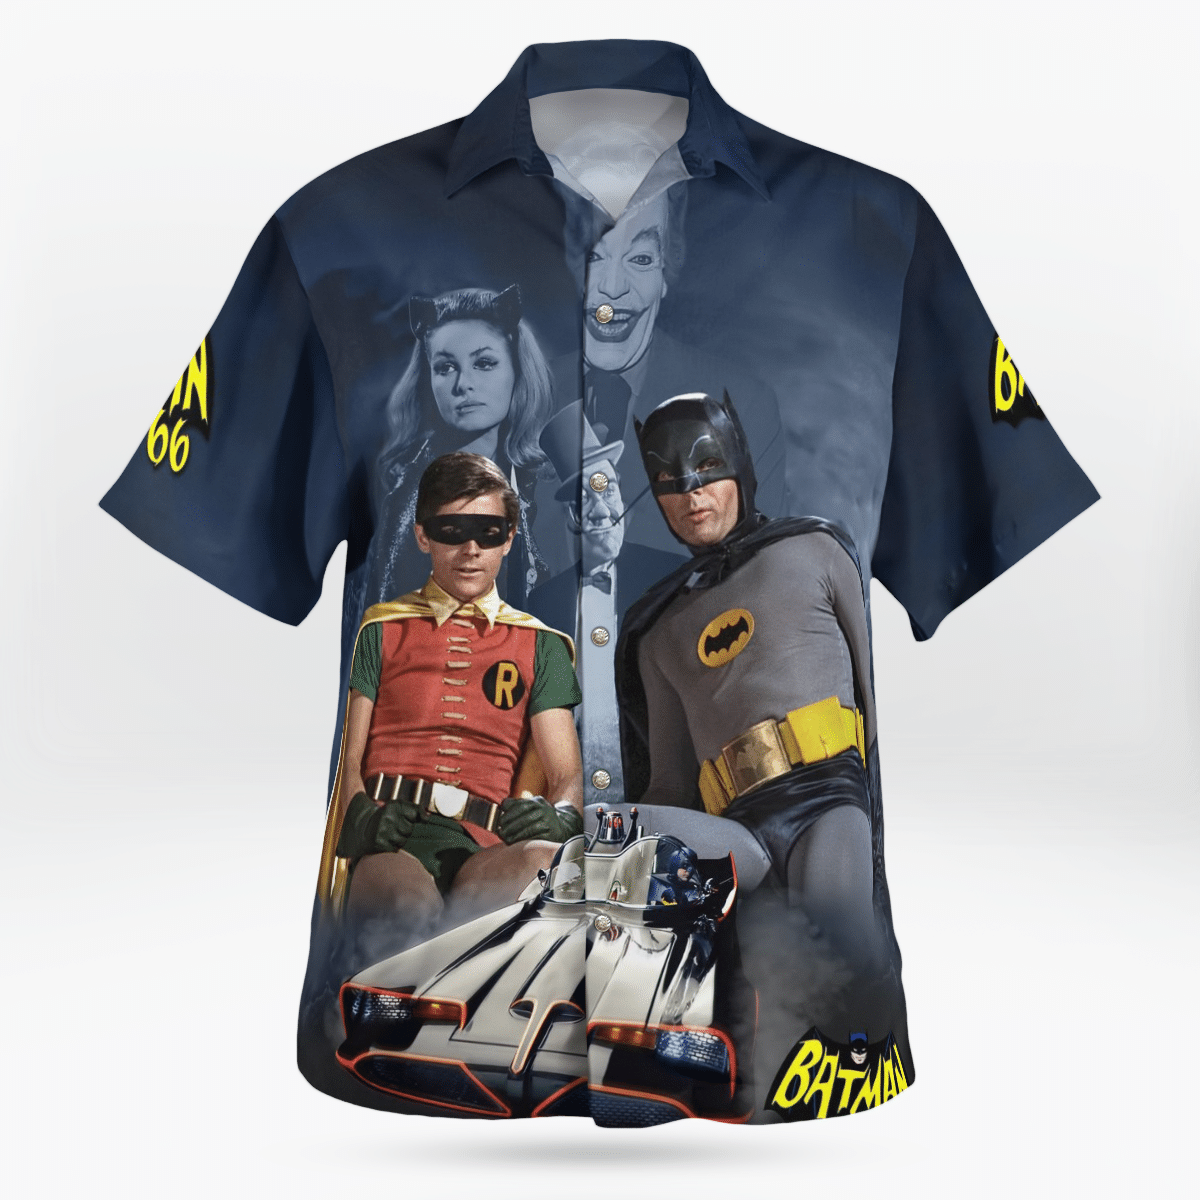 Batman and Robin Hawaiian shirt 1